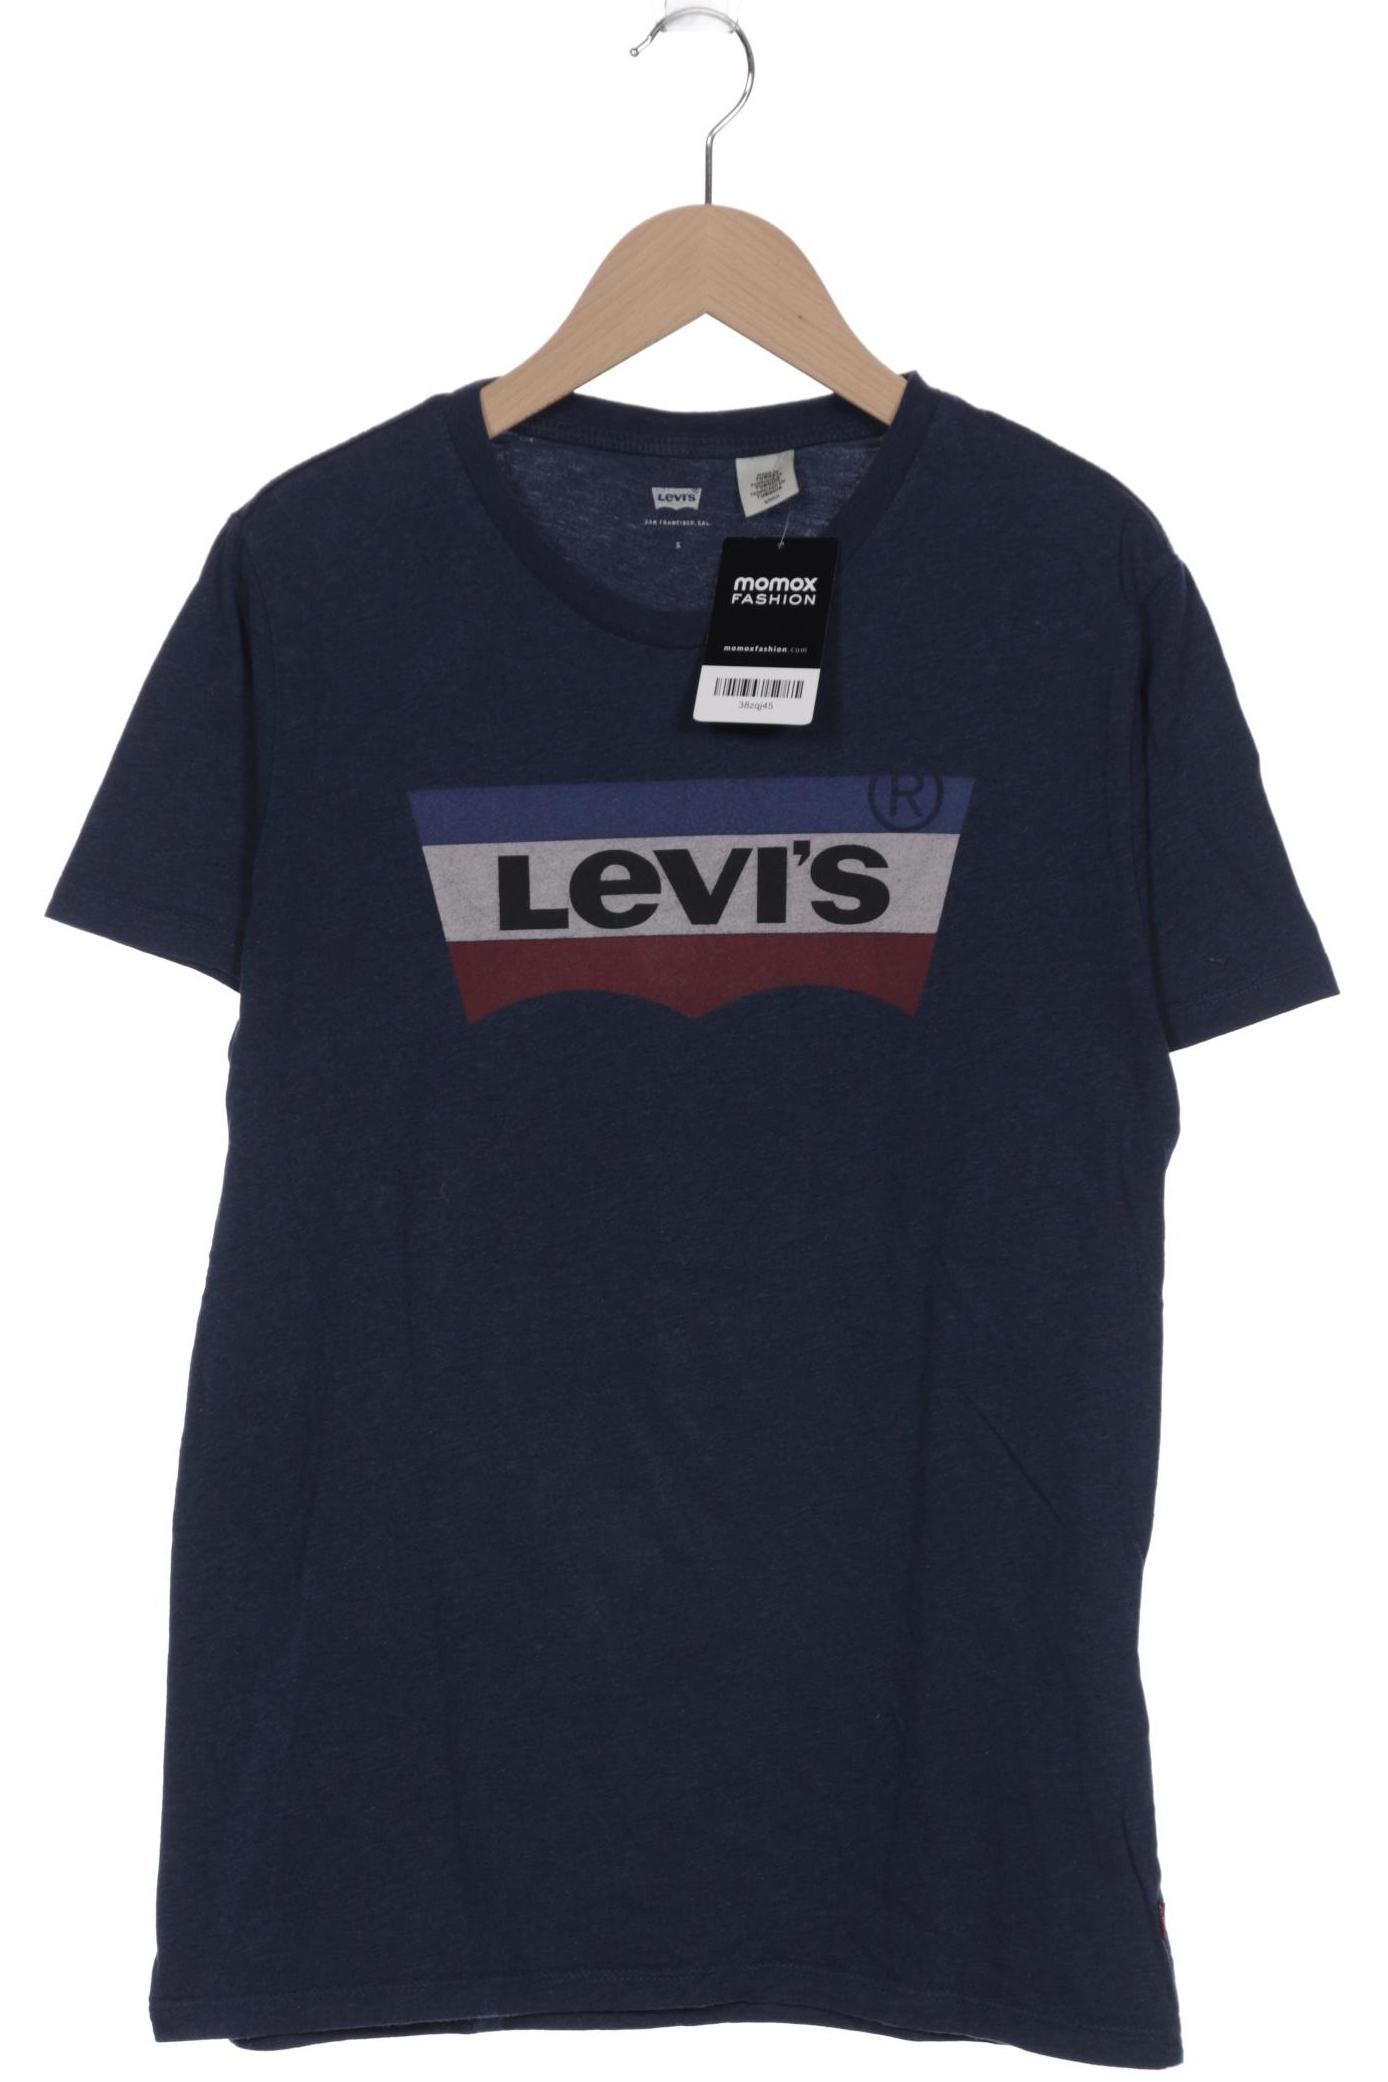 Levis Herren T-Shirt, blau von Levis